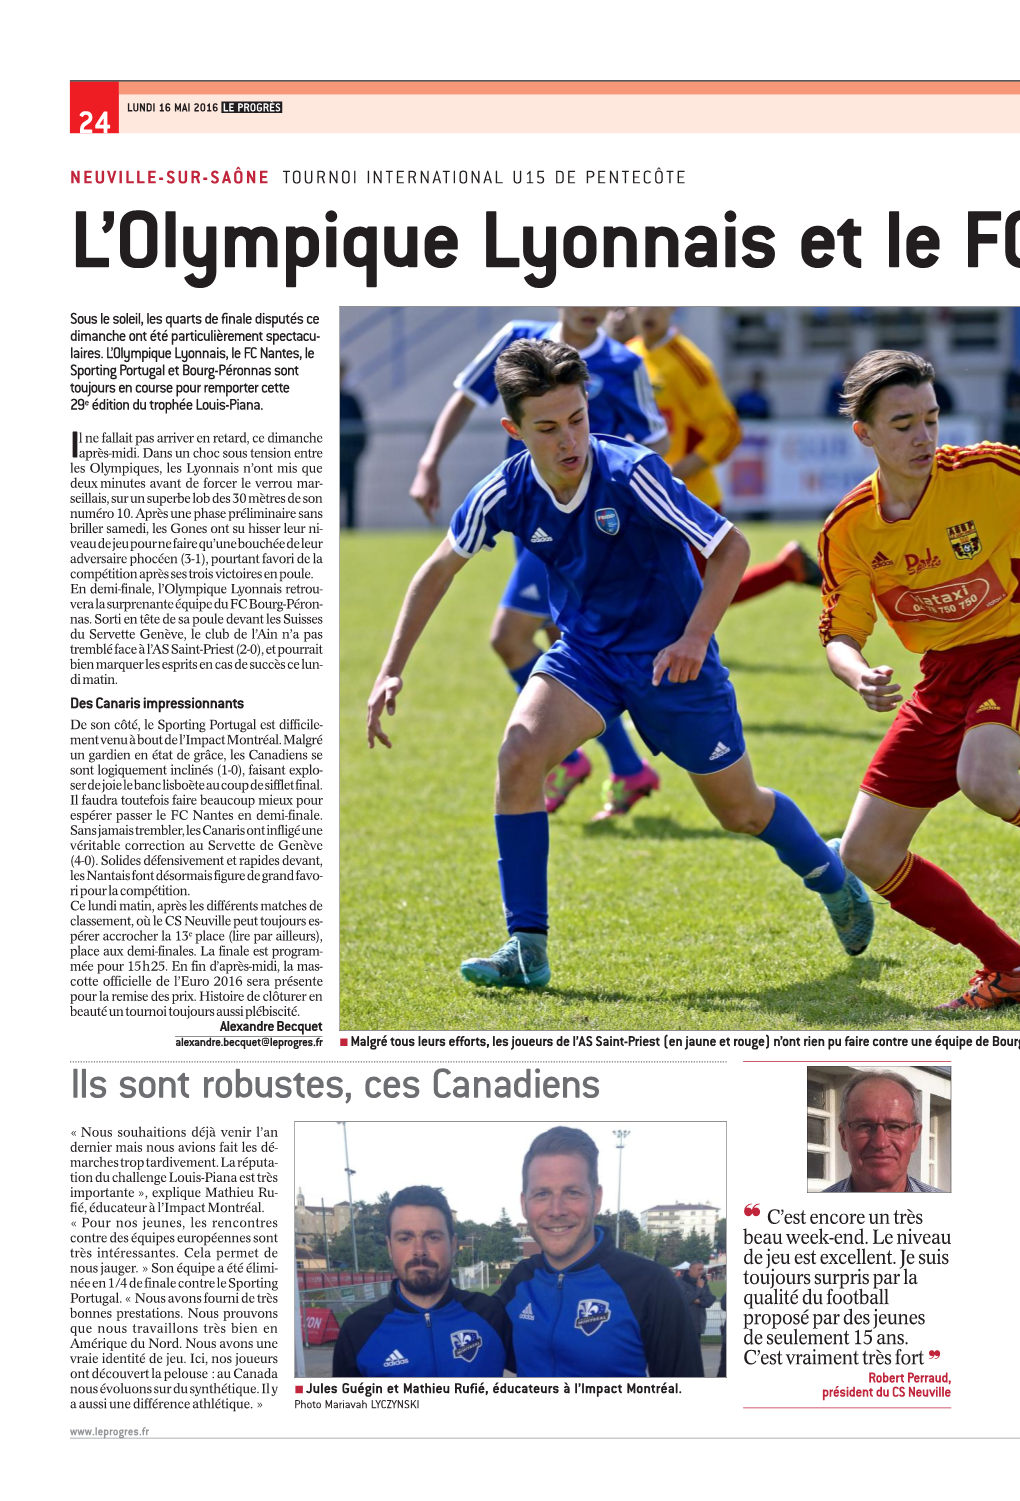 L'olympique Lyonnais Et Le FC Nantes Favor